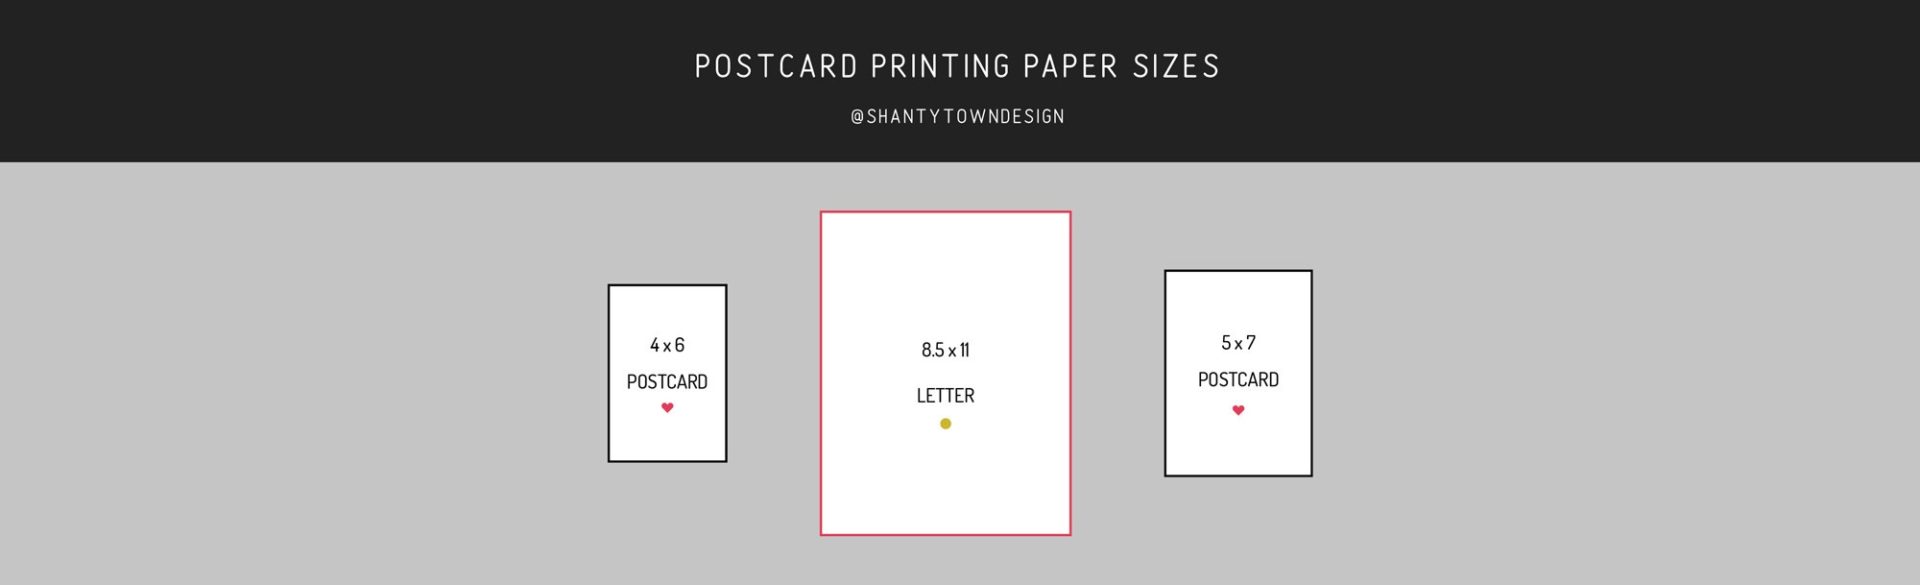 Printing Paper Size - FAQ